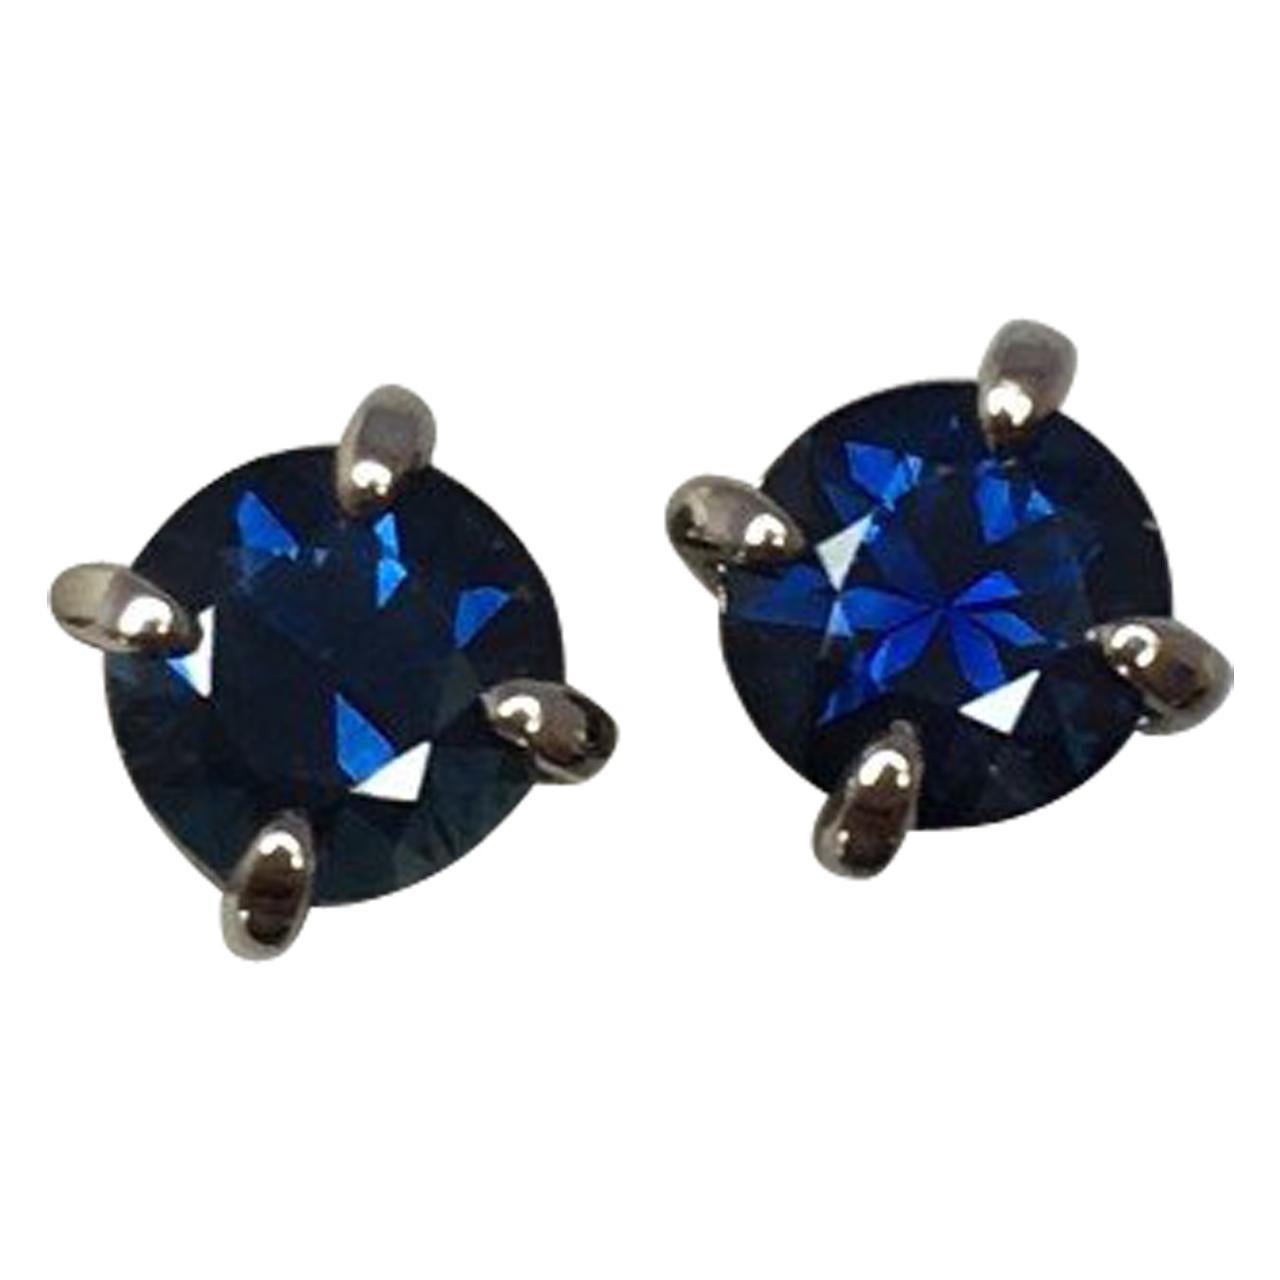 NEW Deep Blue 1.22 Carat Australian Sapphire 18K Gold Round Cut Earring Studs